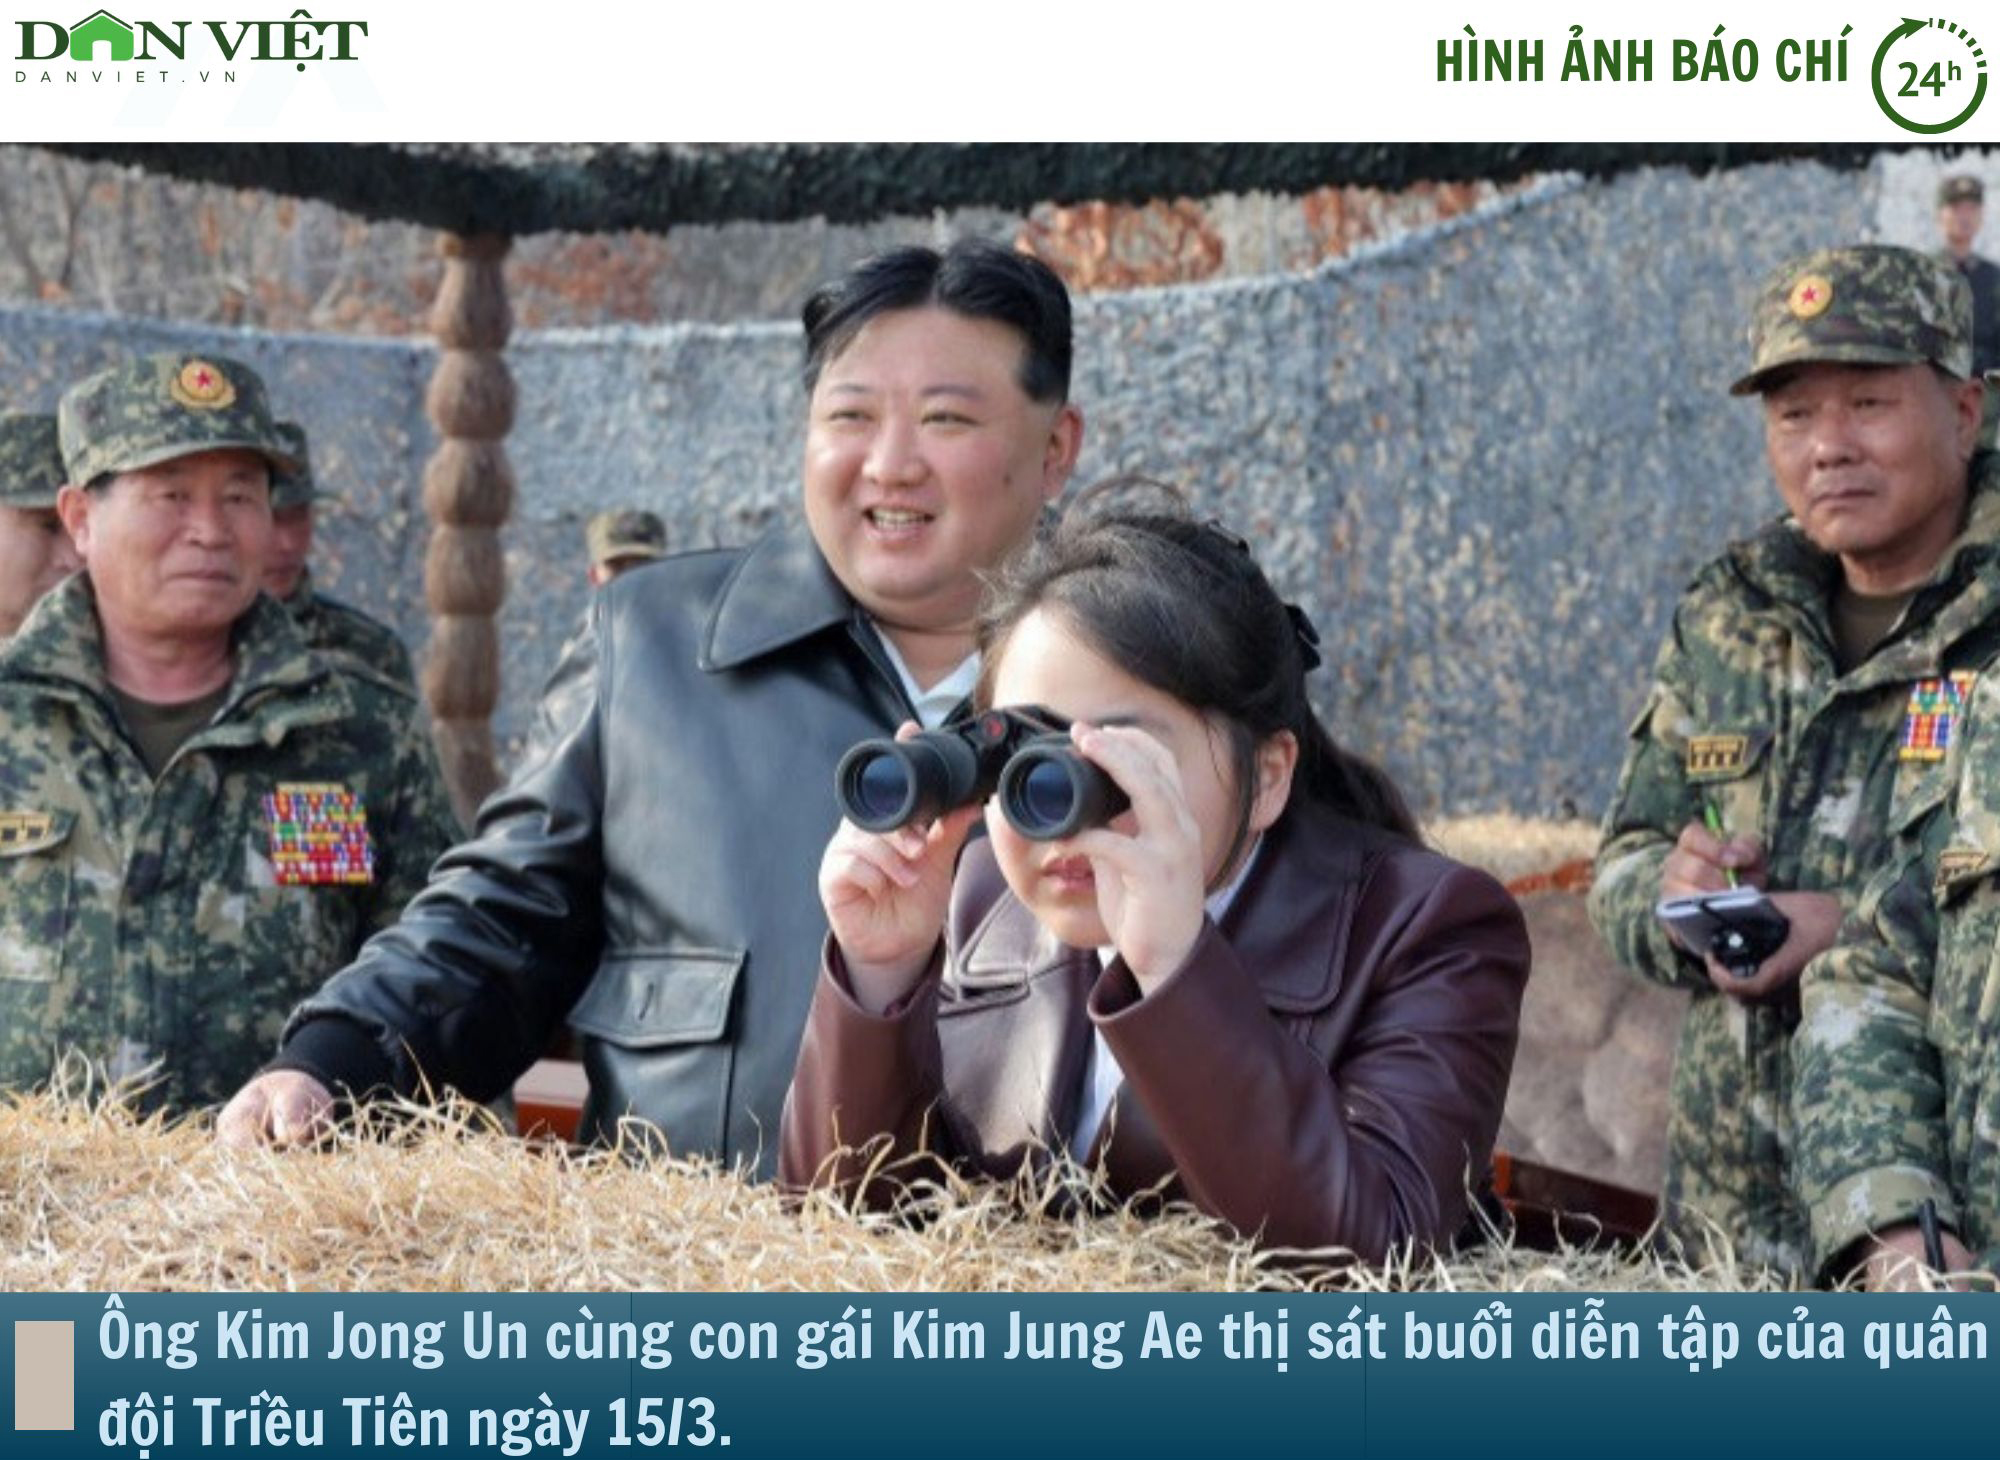 Hình ảnh báo chí 24h: Ông Kim Jong-un dẫn con gái 11 tuổi thị sát diễn tập trên không của quân đội Triều Tiên- Ảnh 1.